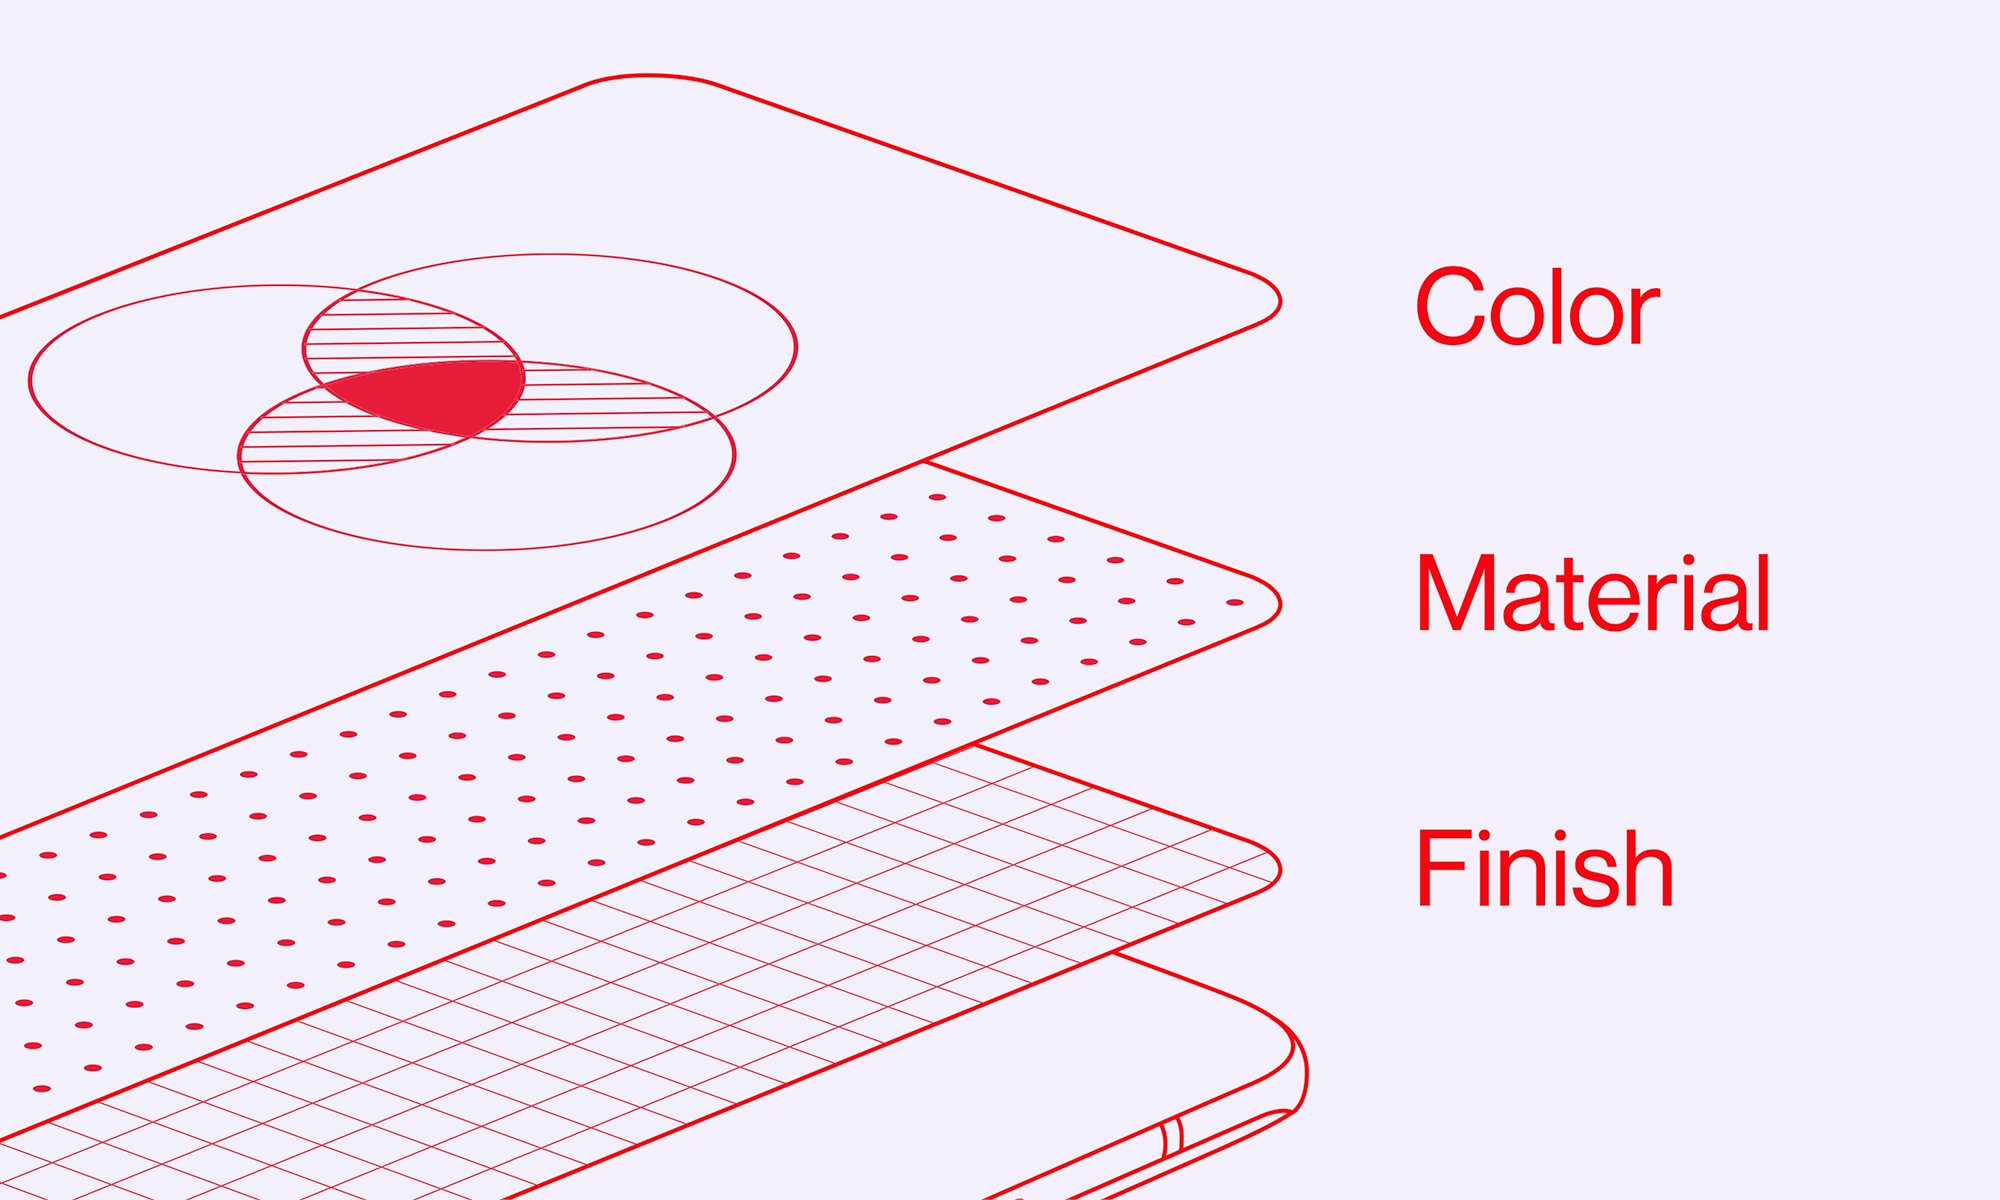 दिवसभरामध्ये आपण २०० पेक्षा अधिक वेळा फोन उचलतो. त्यामुळे आम्ही रंग, वापरण्यात आलेले मटेरियल आणि डिझायनिंगचा विचार करुन हा फोन बनवला आहे असं कंपनीने म्हटलं आहे.